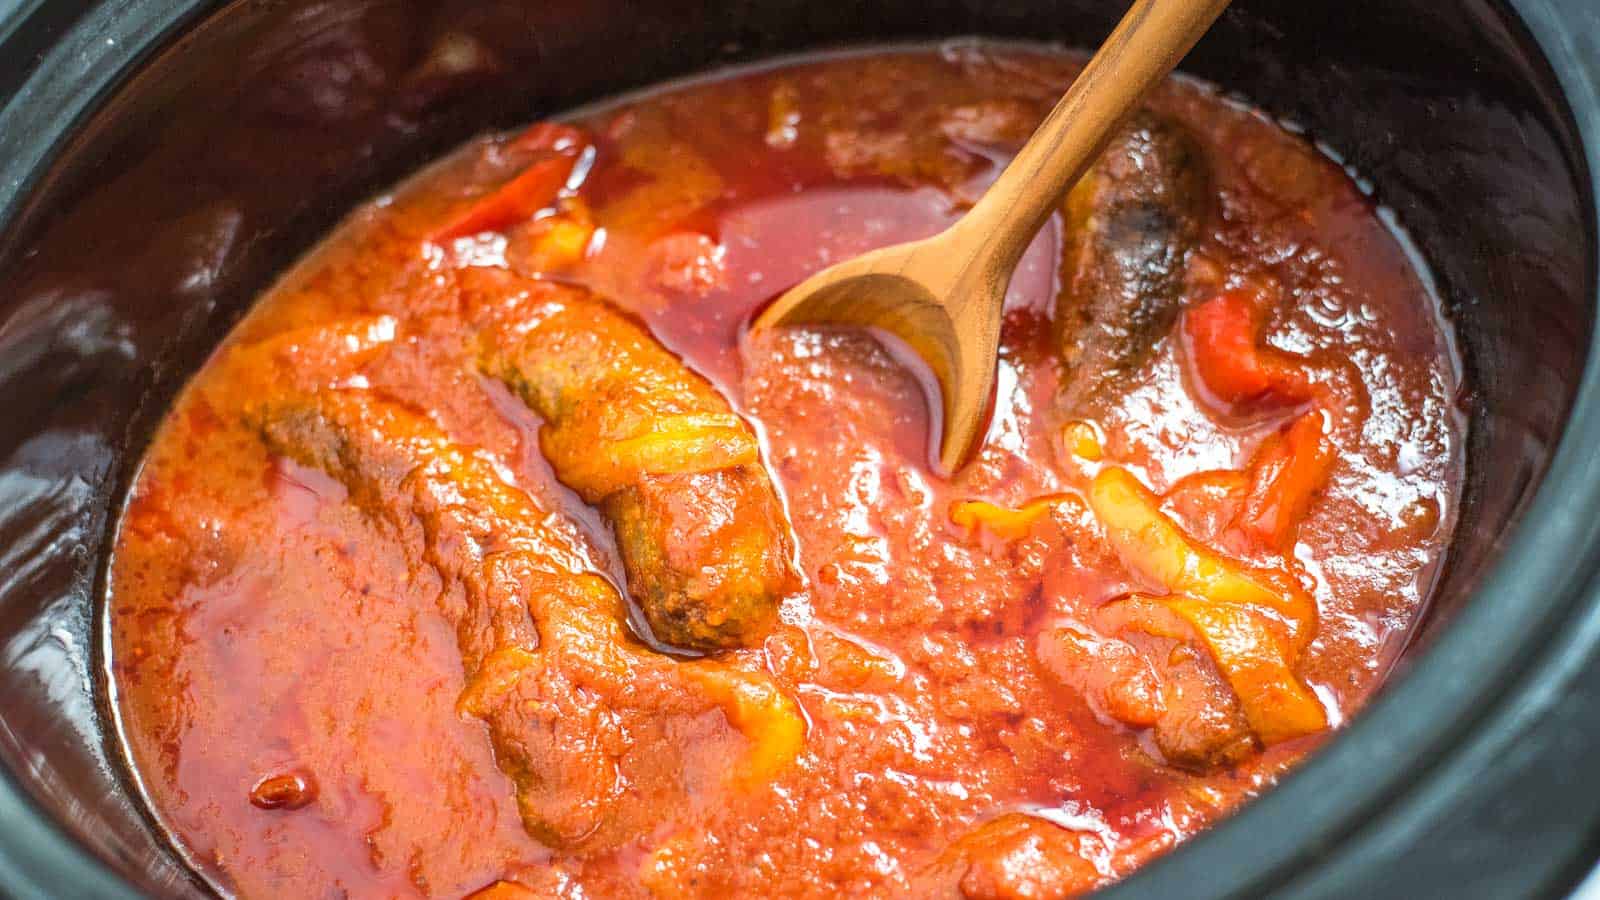 A crock pot full of sausage, peppers, and marinara sauce.